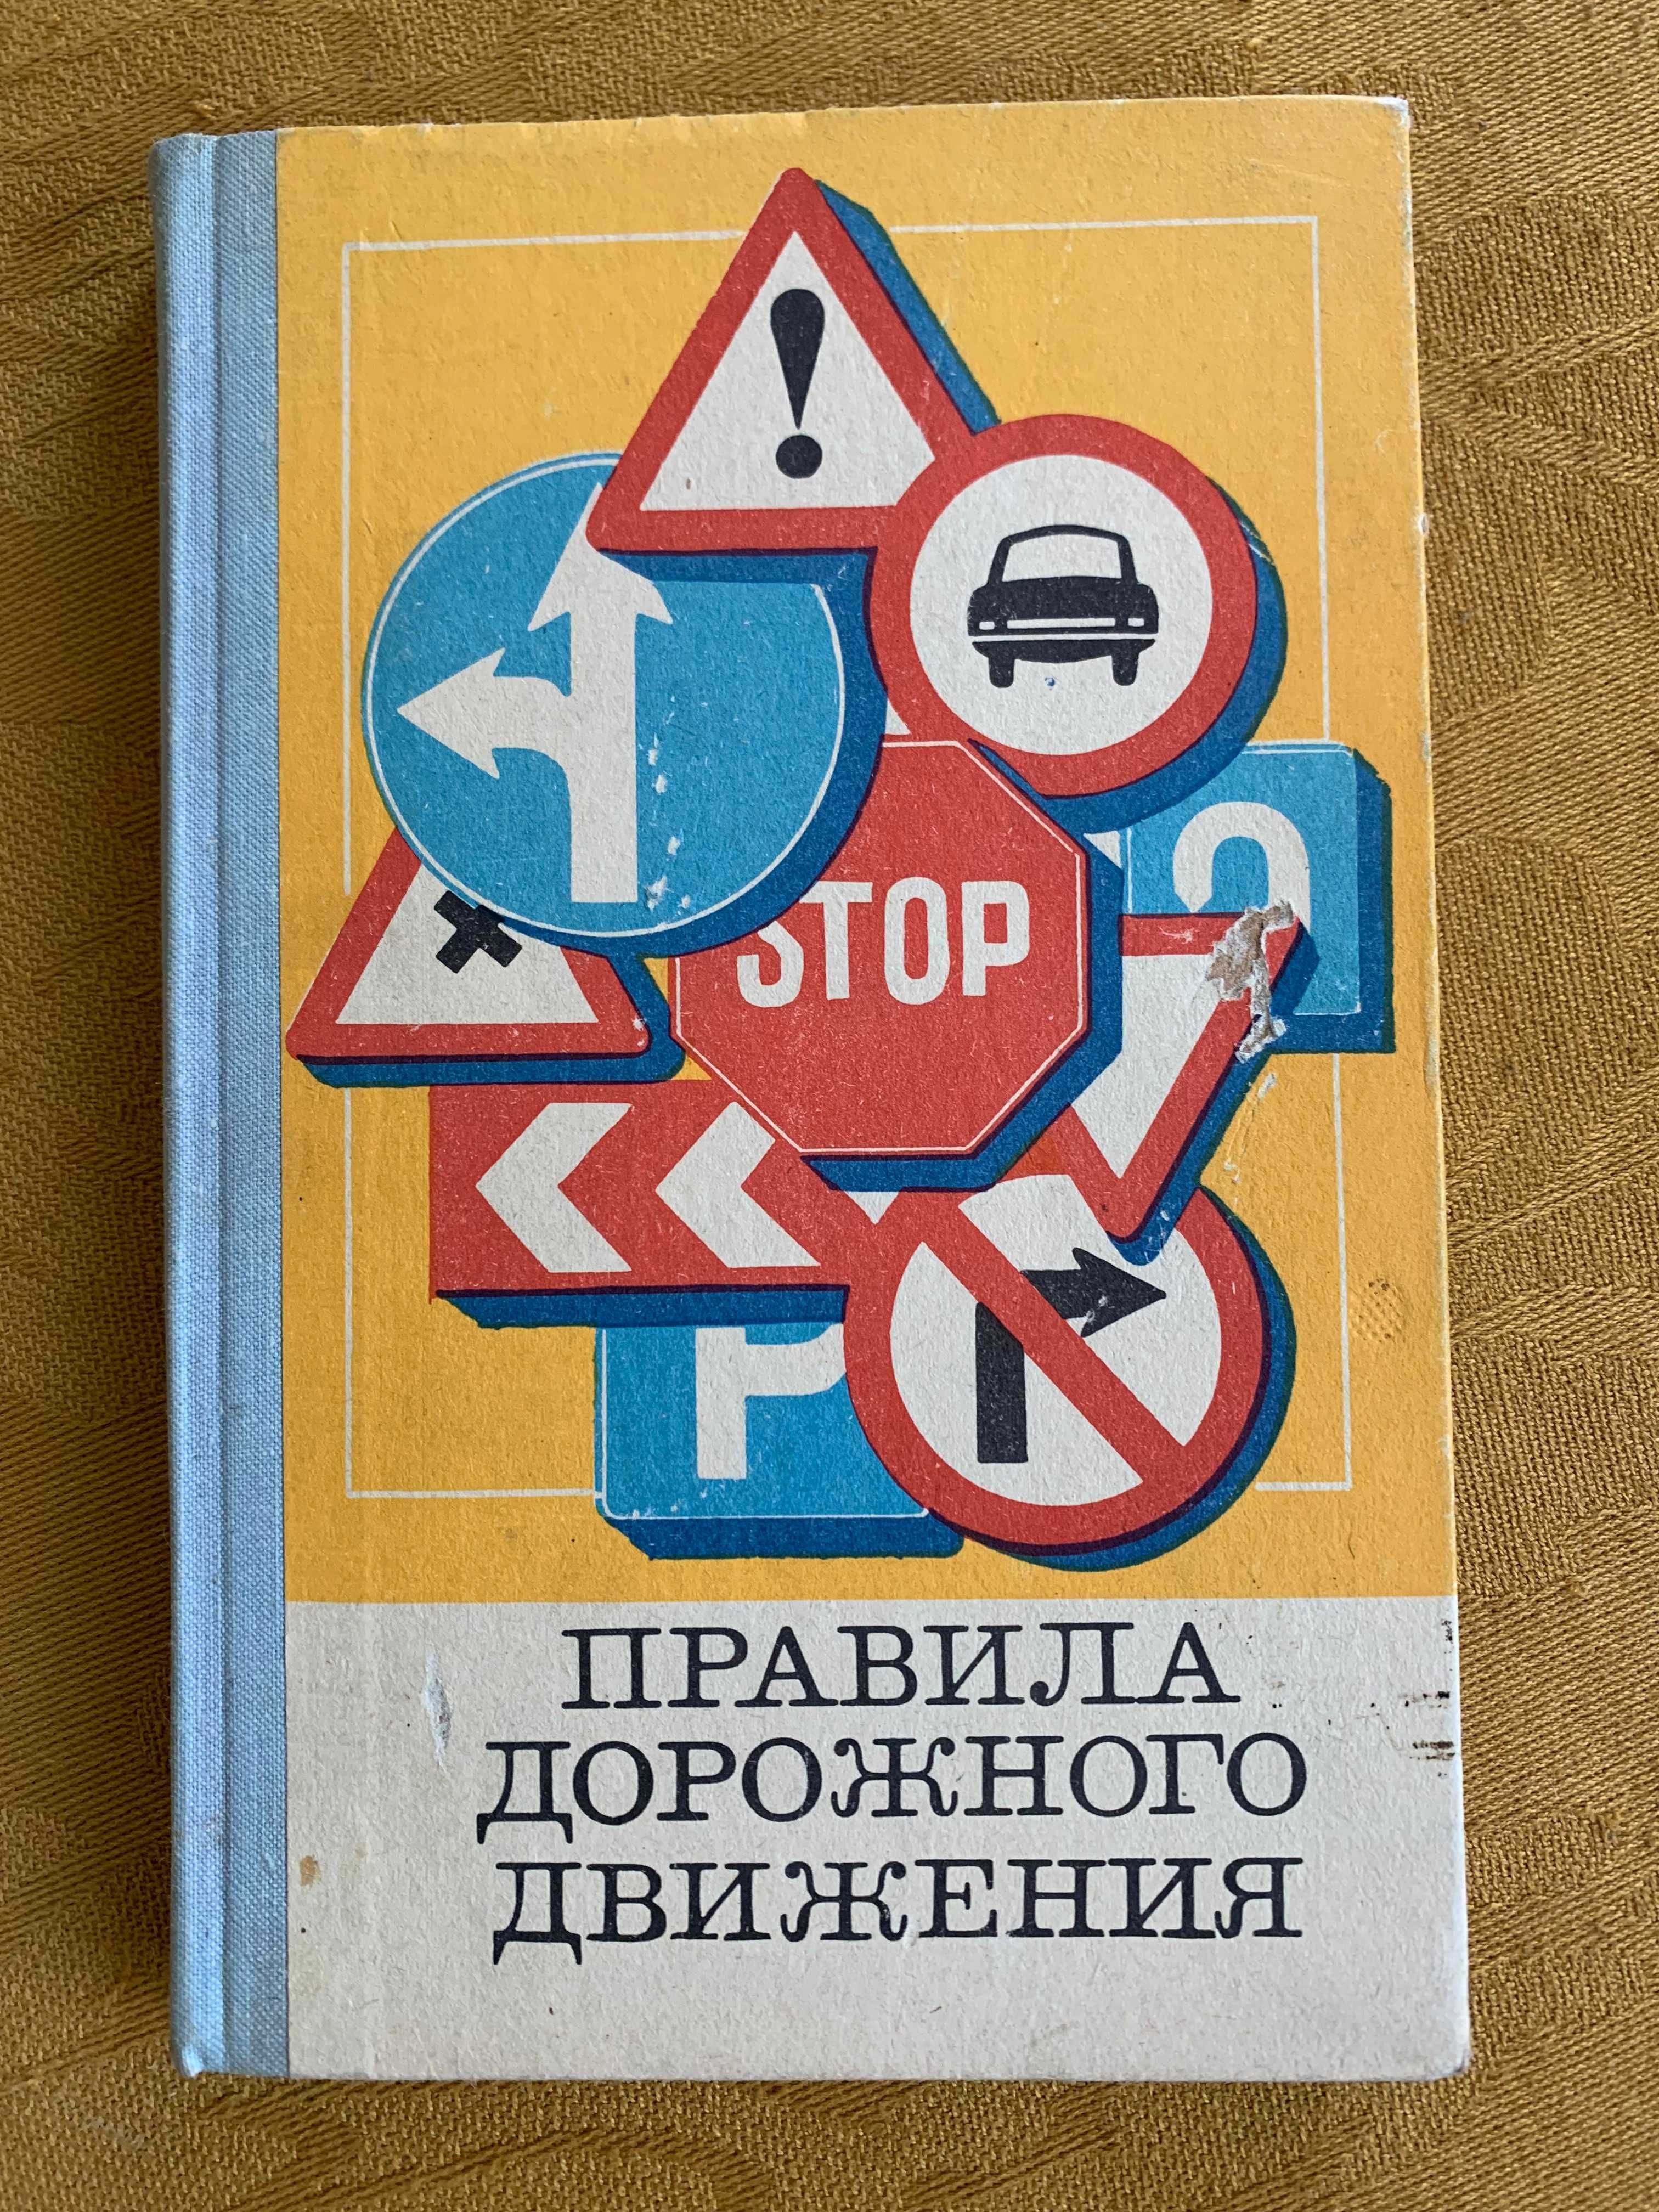 Zasady ruchu drogowego po rosyjsku z czasów ZSRR